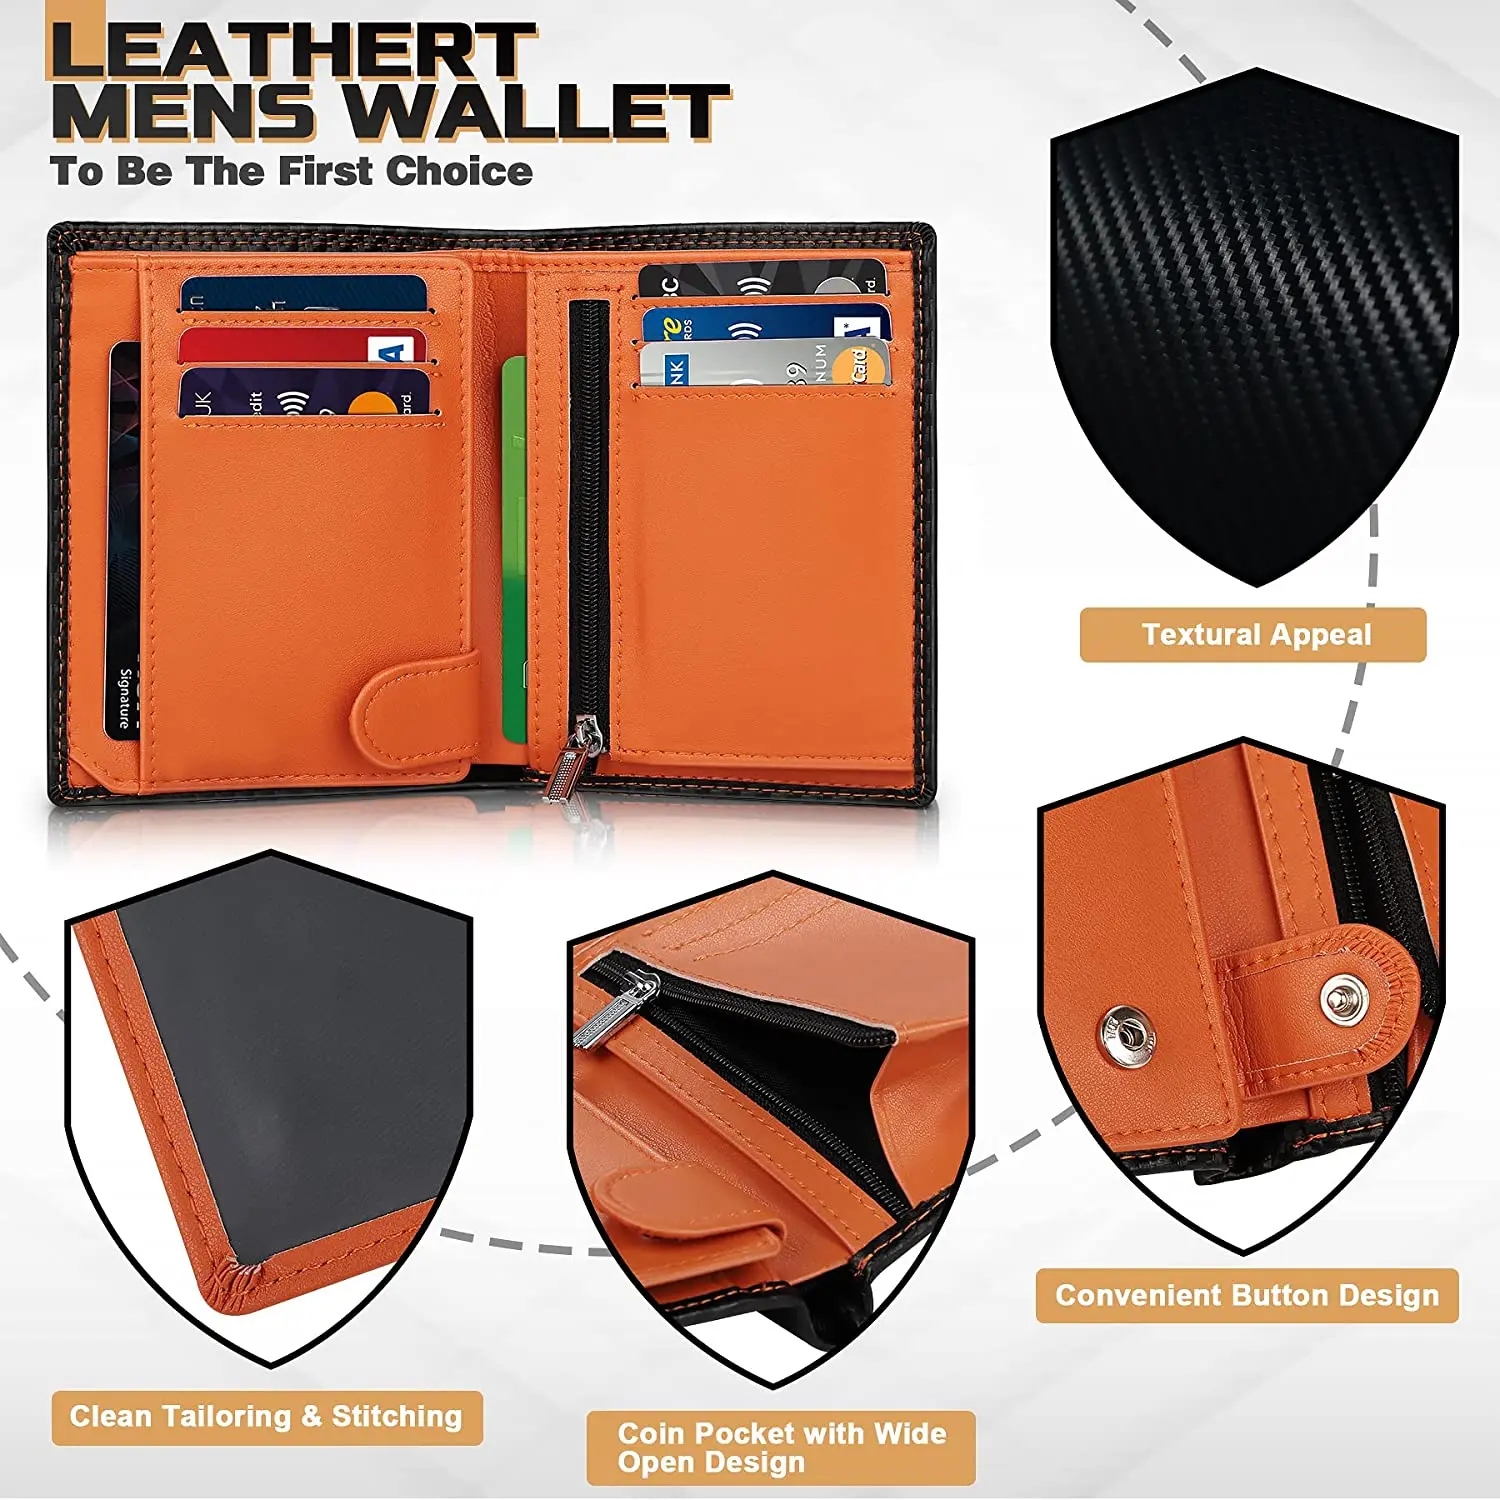 TEEHON Carbon Fiber Leather Men Wallet Coin Pocket RFID Credit Card Holder Half Span Design Black Purse